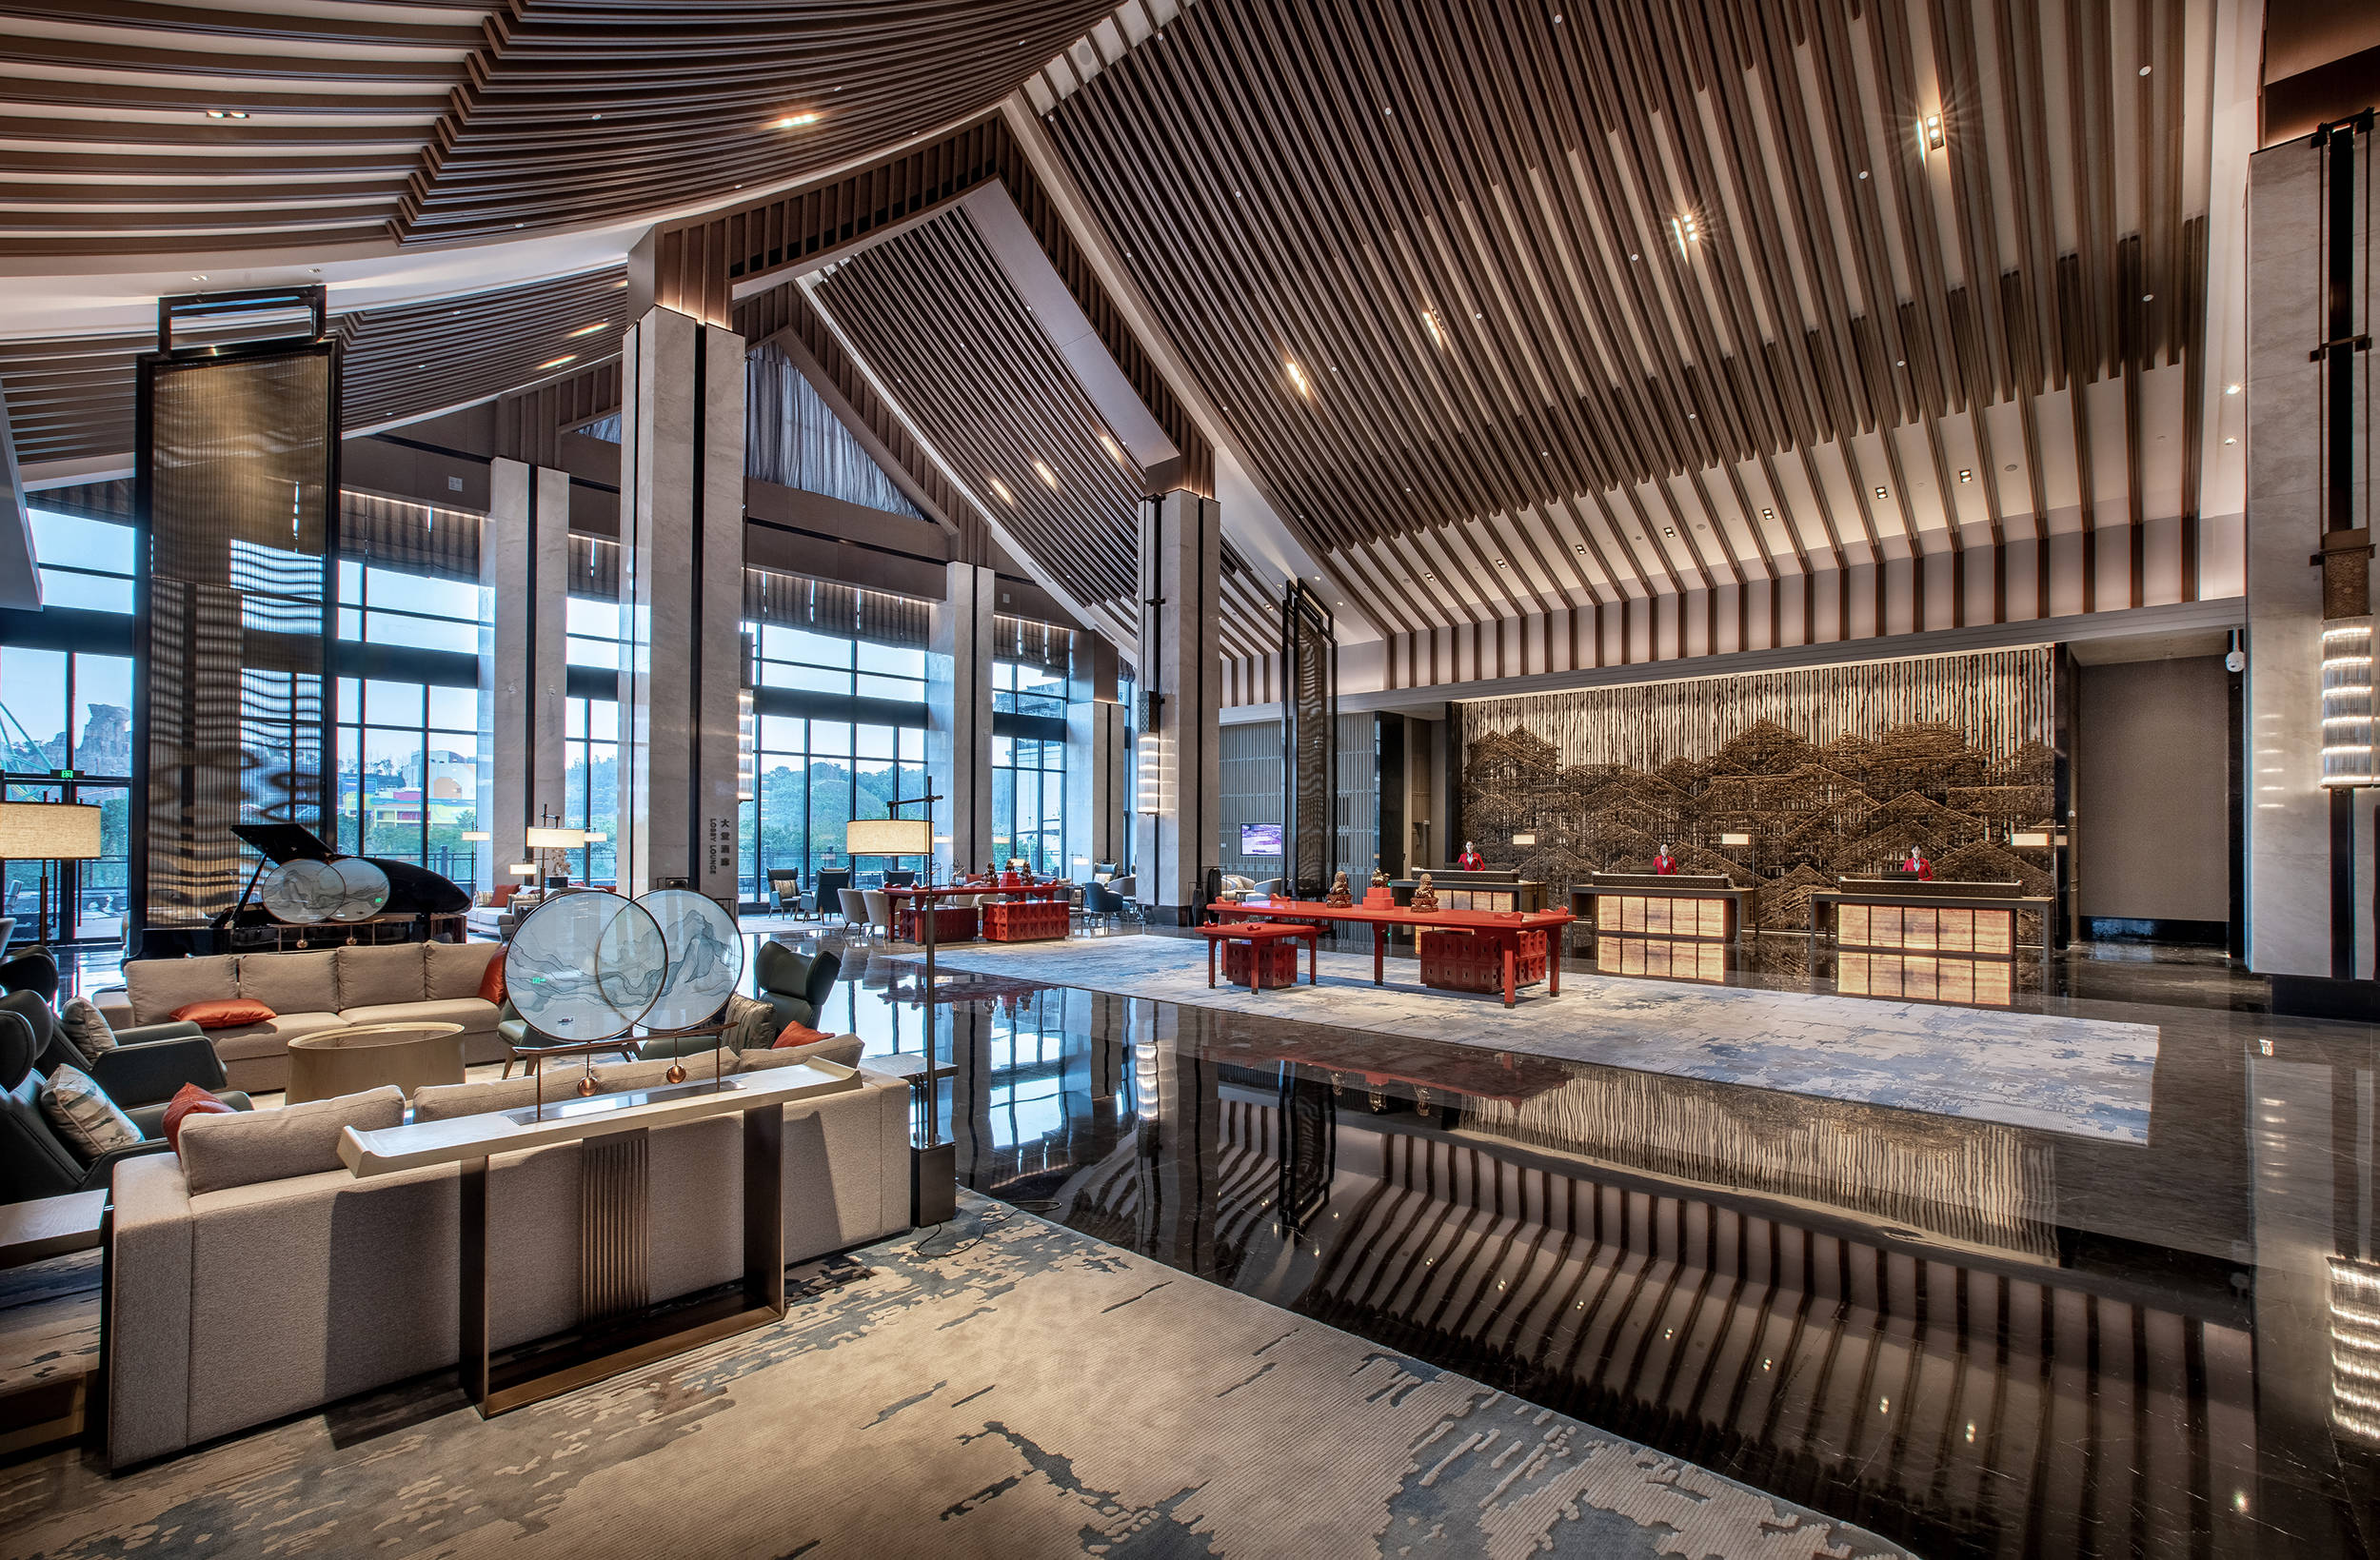 重庆融创万达嘉华酒店位于湖心岛中心,其设计灵感来源于重庆的自然